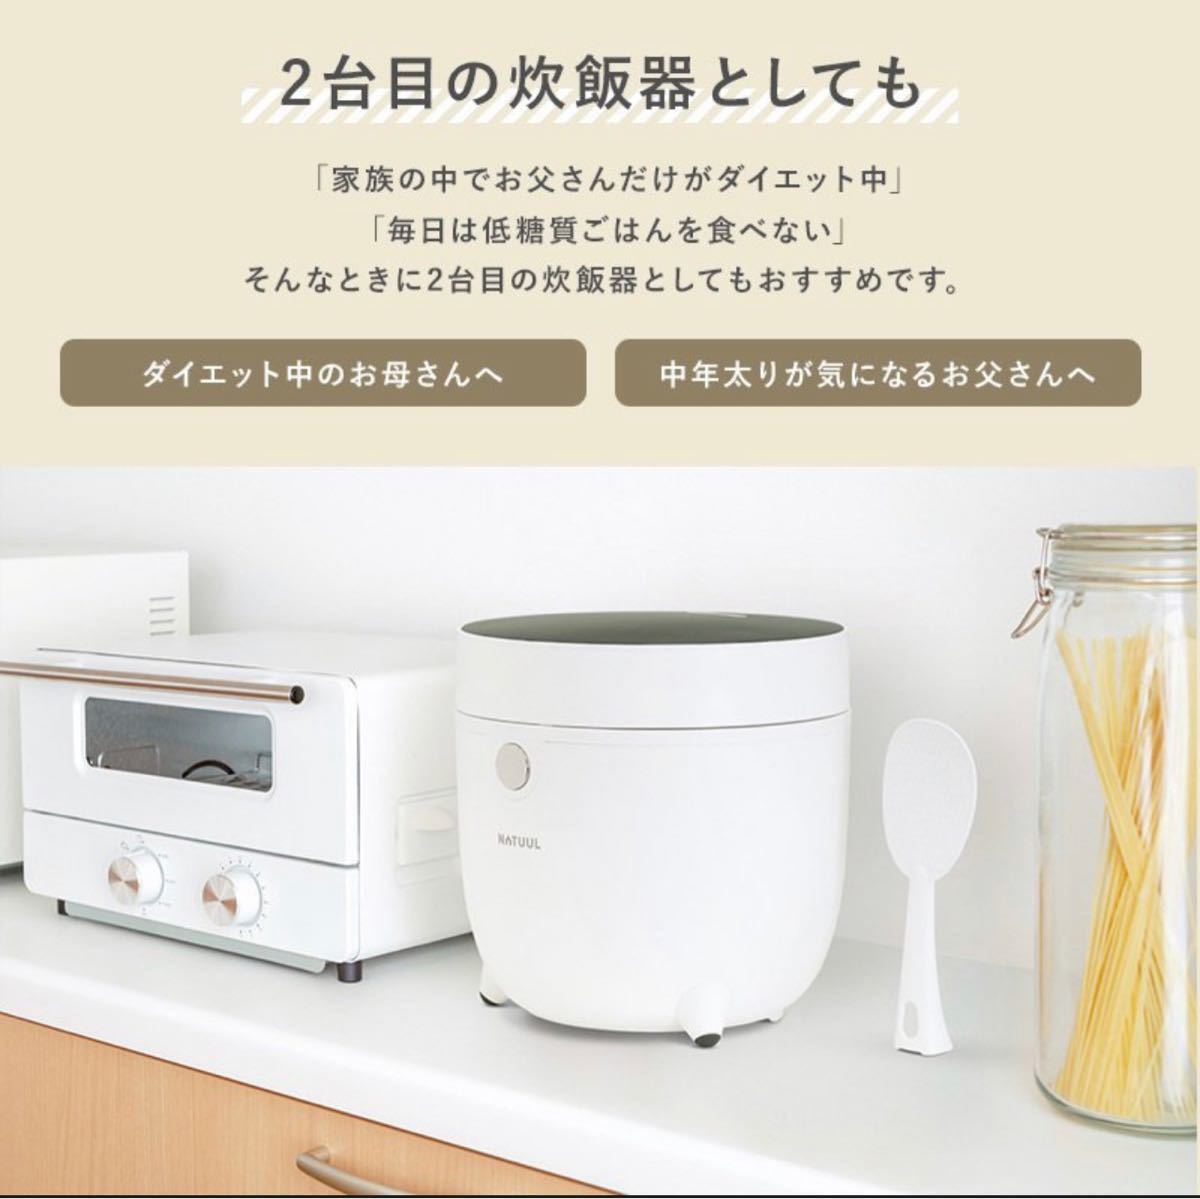 【新品・未開封】NATUUL 糖質カット炊飯器 1.5合 サラダチキンモード搭載